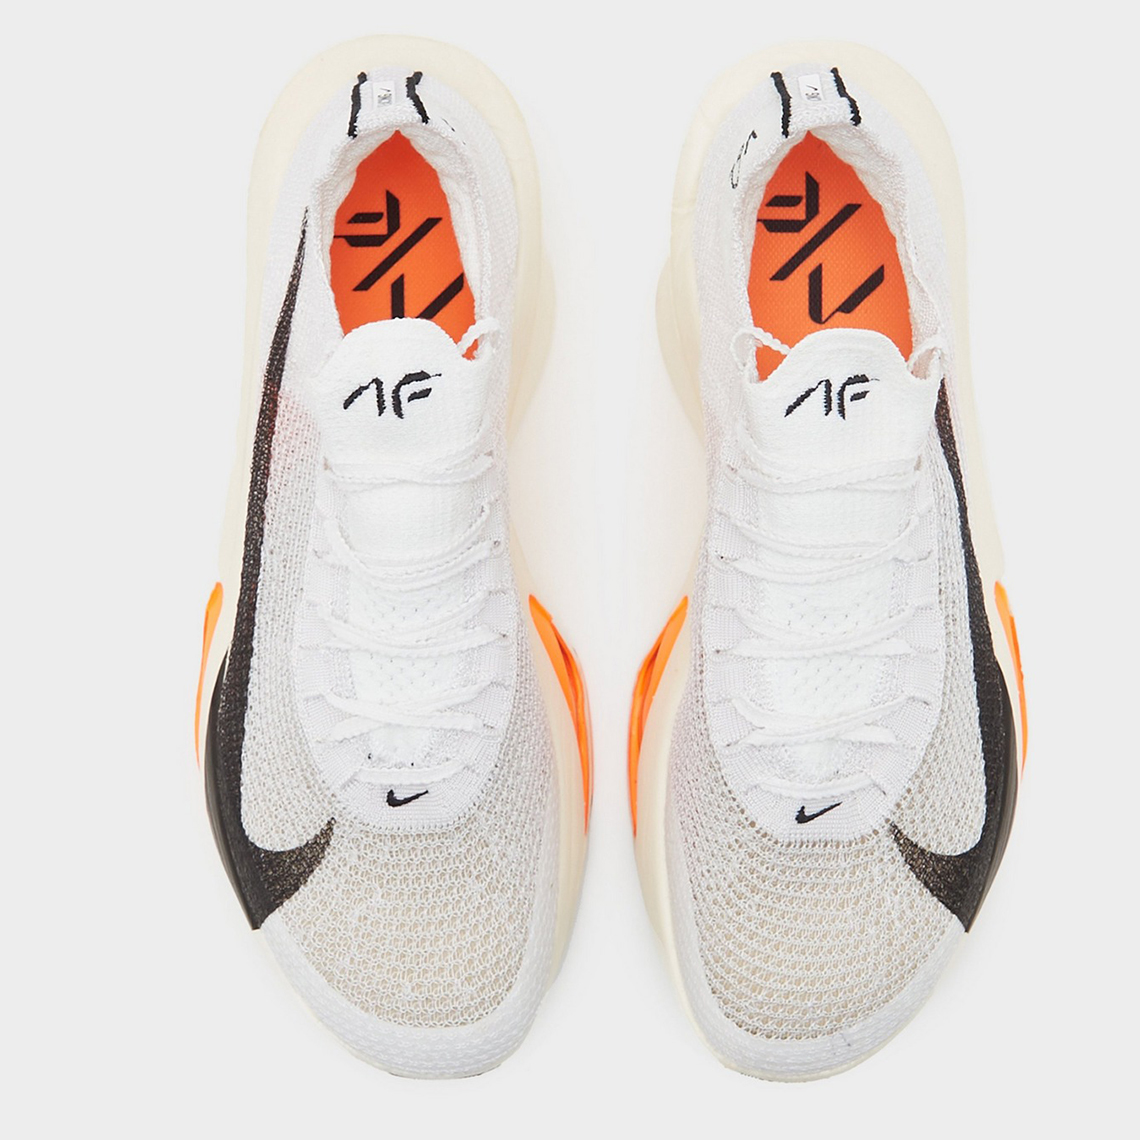 Nike Alphafly 3 Prototype Release Date 3